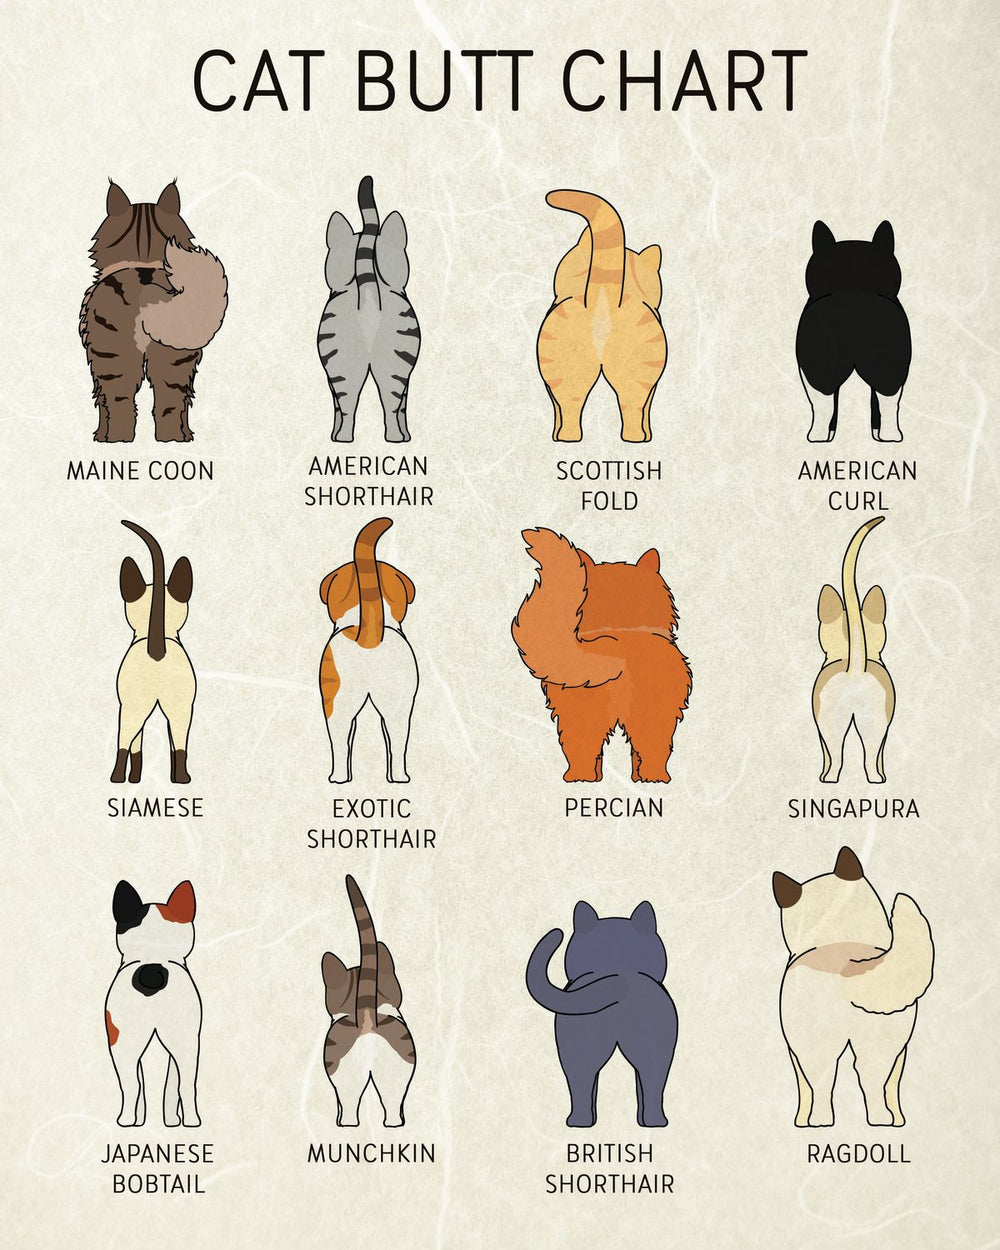 Cat Butts Chart